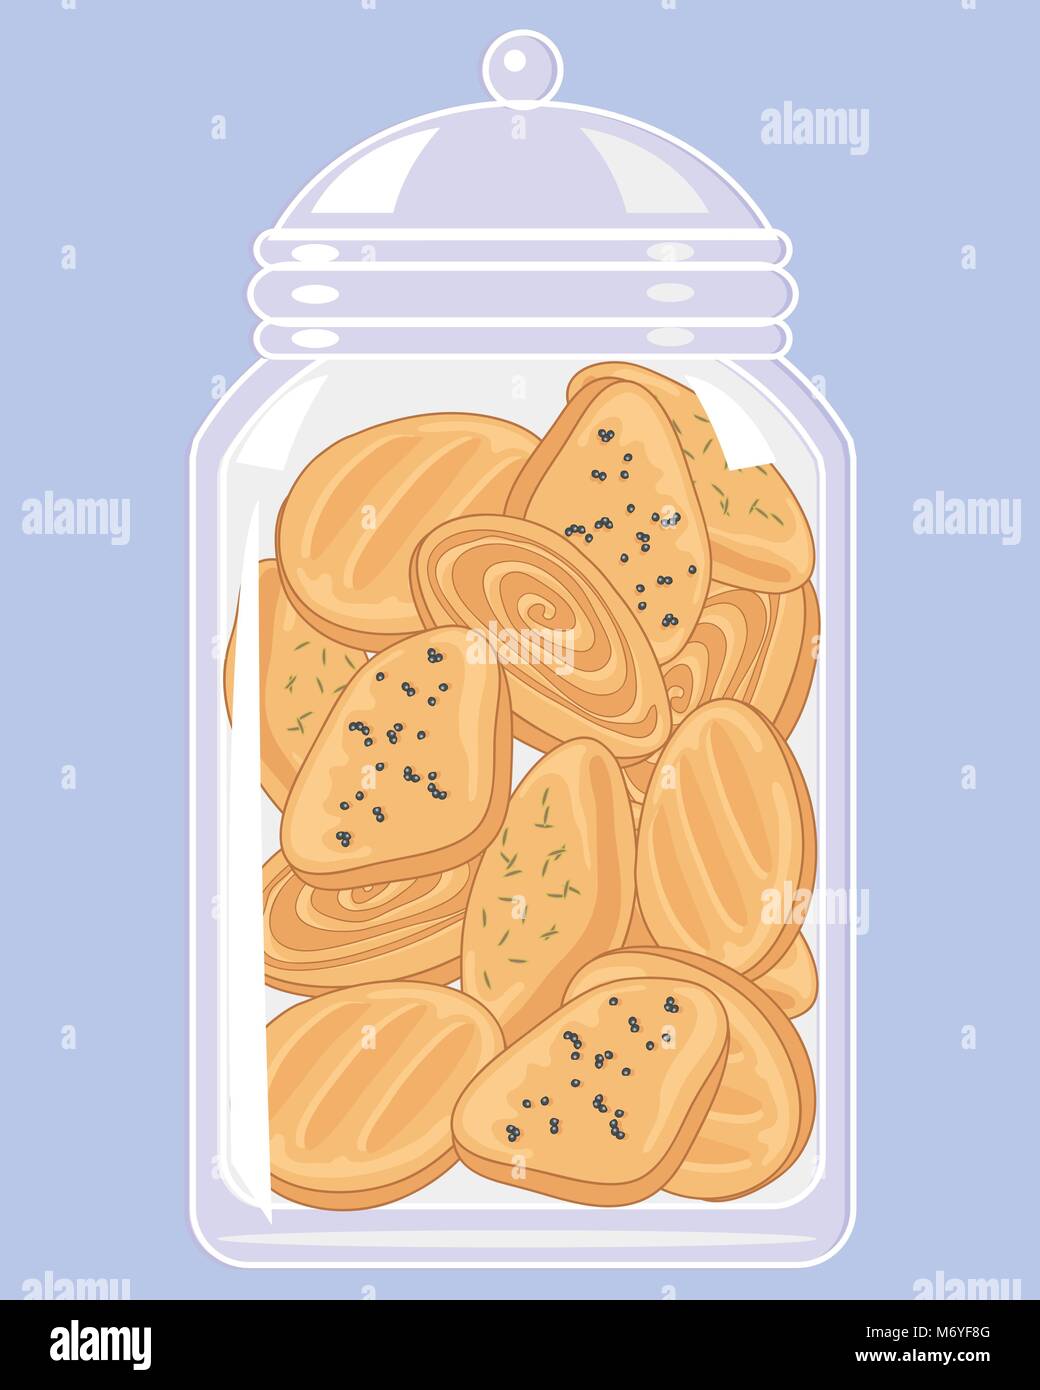 Un vecteur illustration en eps 10 format d'un bol en verre clair de petits biscuits épicés sur un fond bleu Illustration de Vecteur